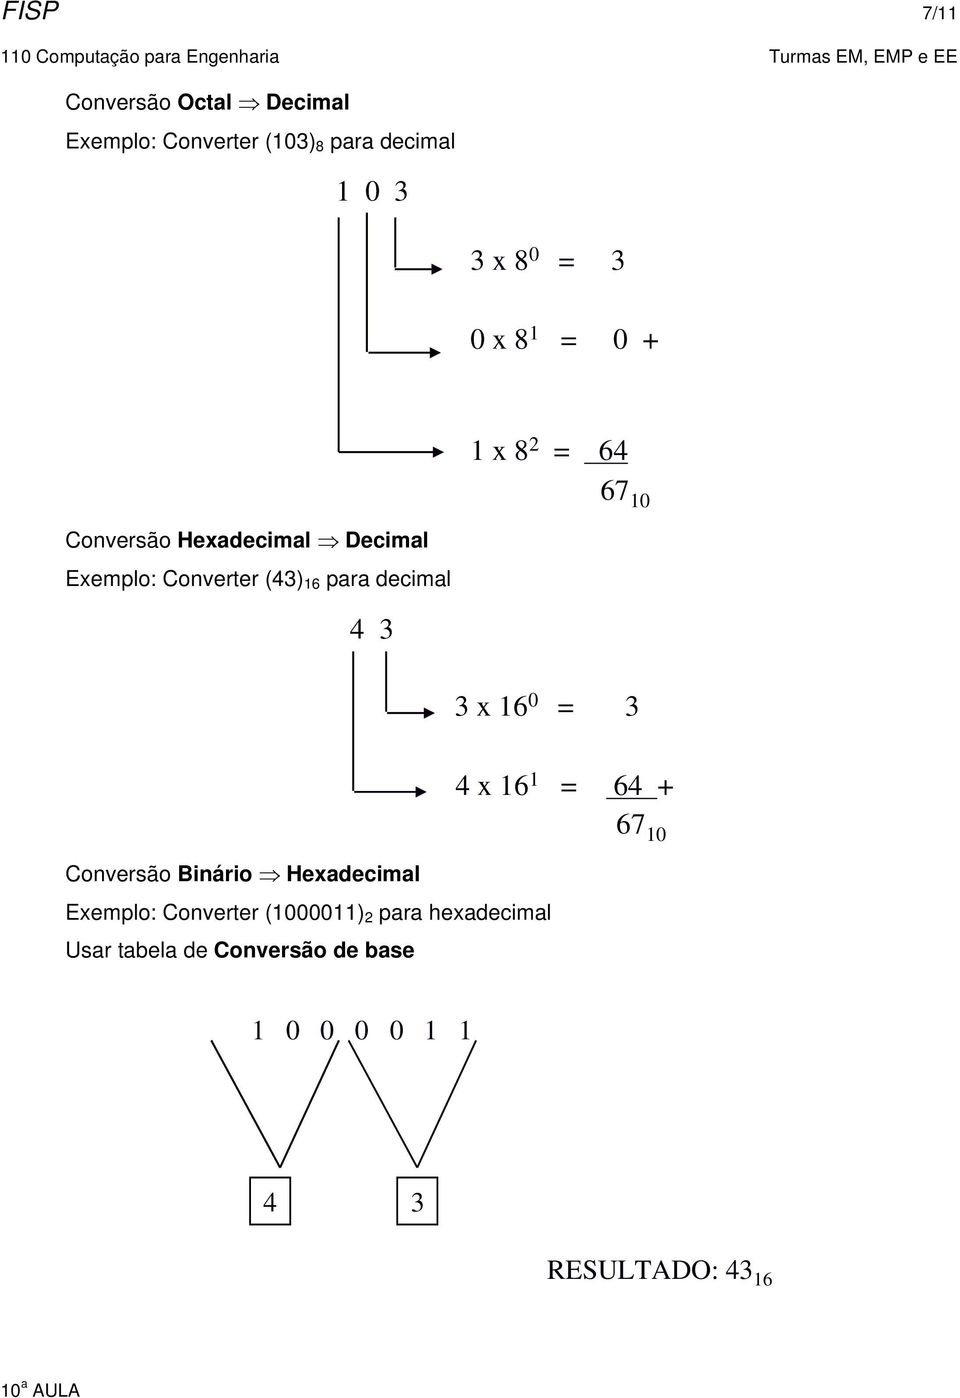 Conversão Binário Hexadecimal 1 x 8 2 = 64 67 10 3 x 16 0 = 3 Exemplo: Converter (1000011) 2